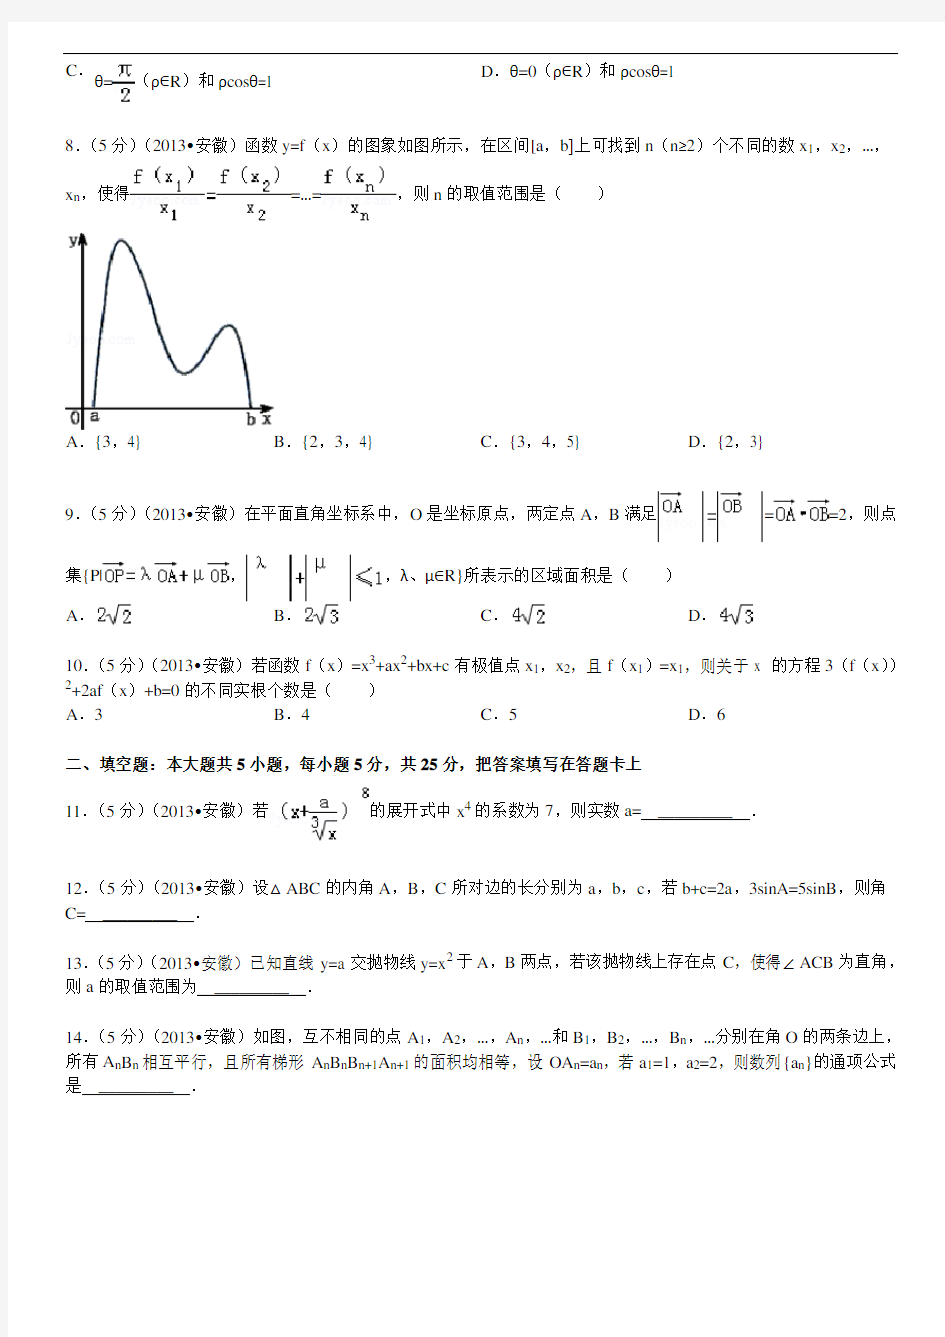 2013年安徽省高考数学试卷(理科)及解析